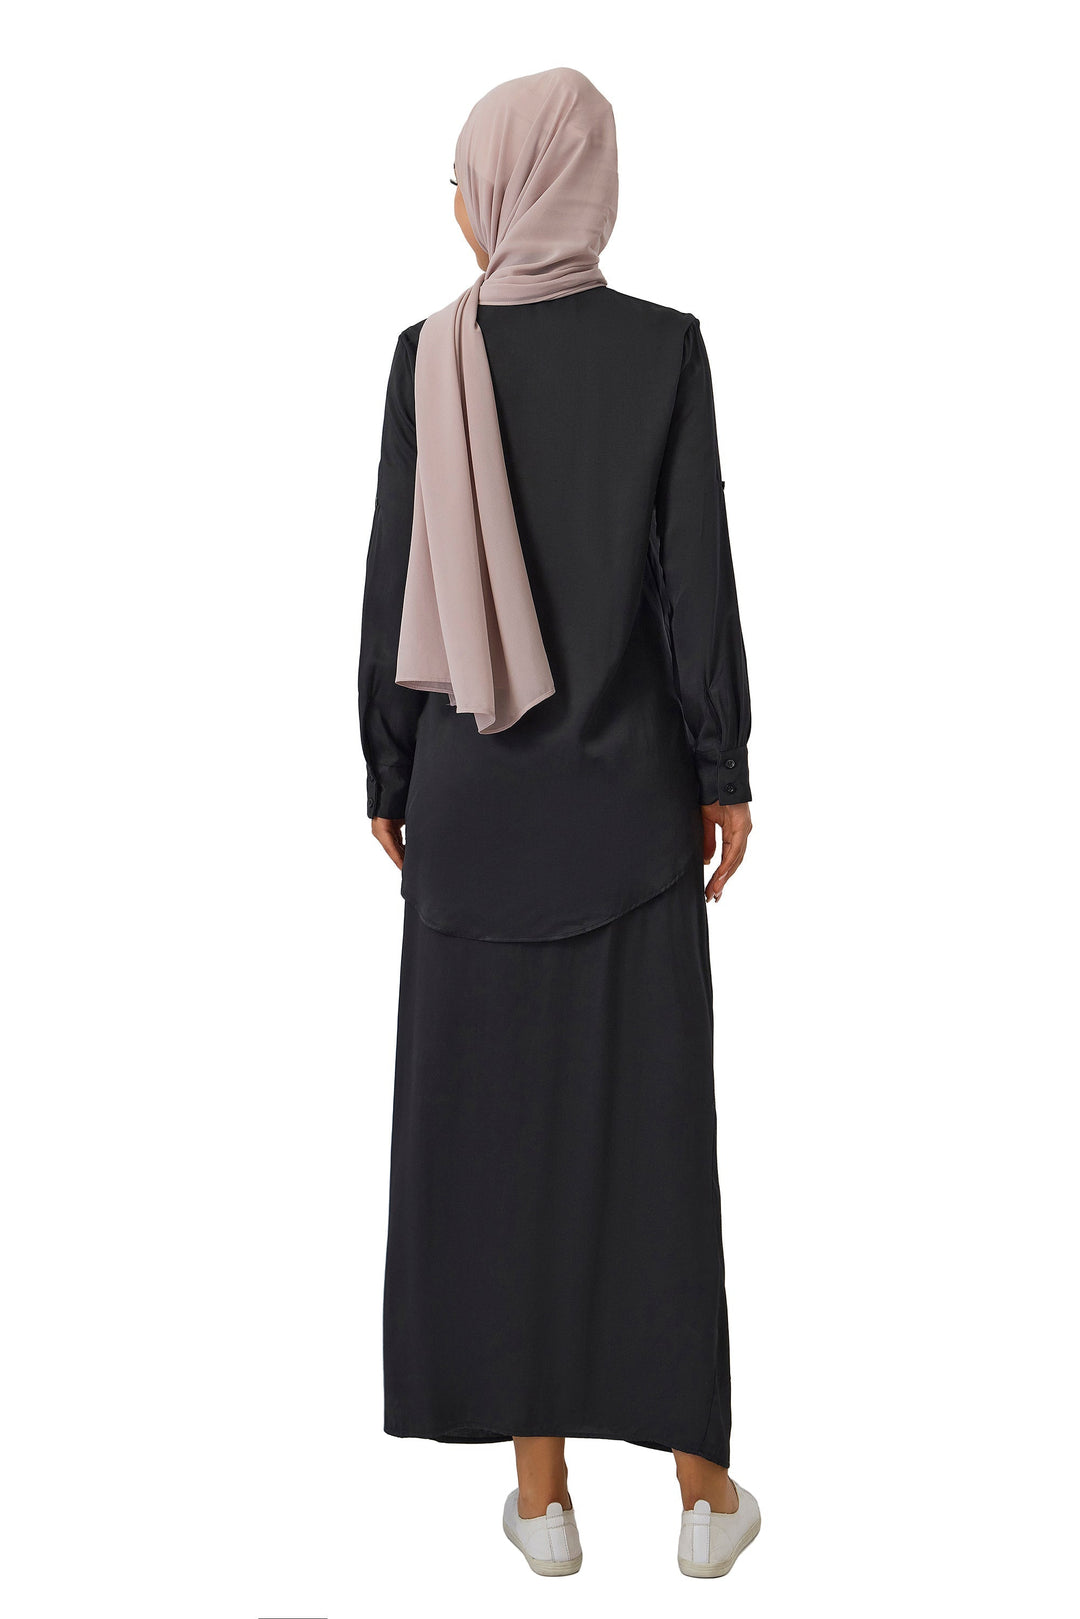 Taupe Chiffon Hijab – Urban Modesty